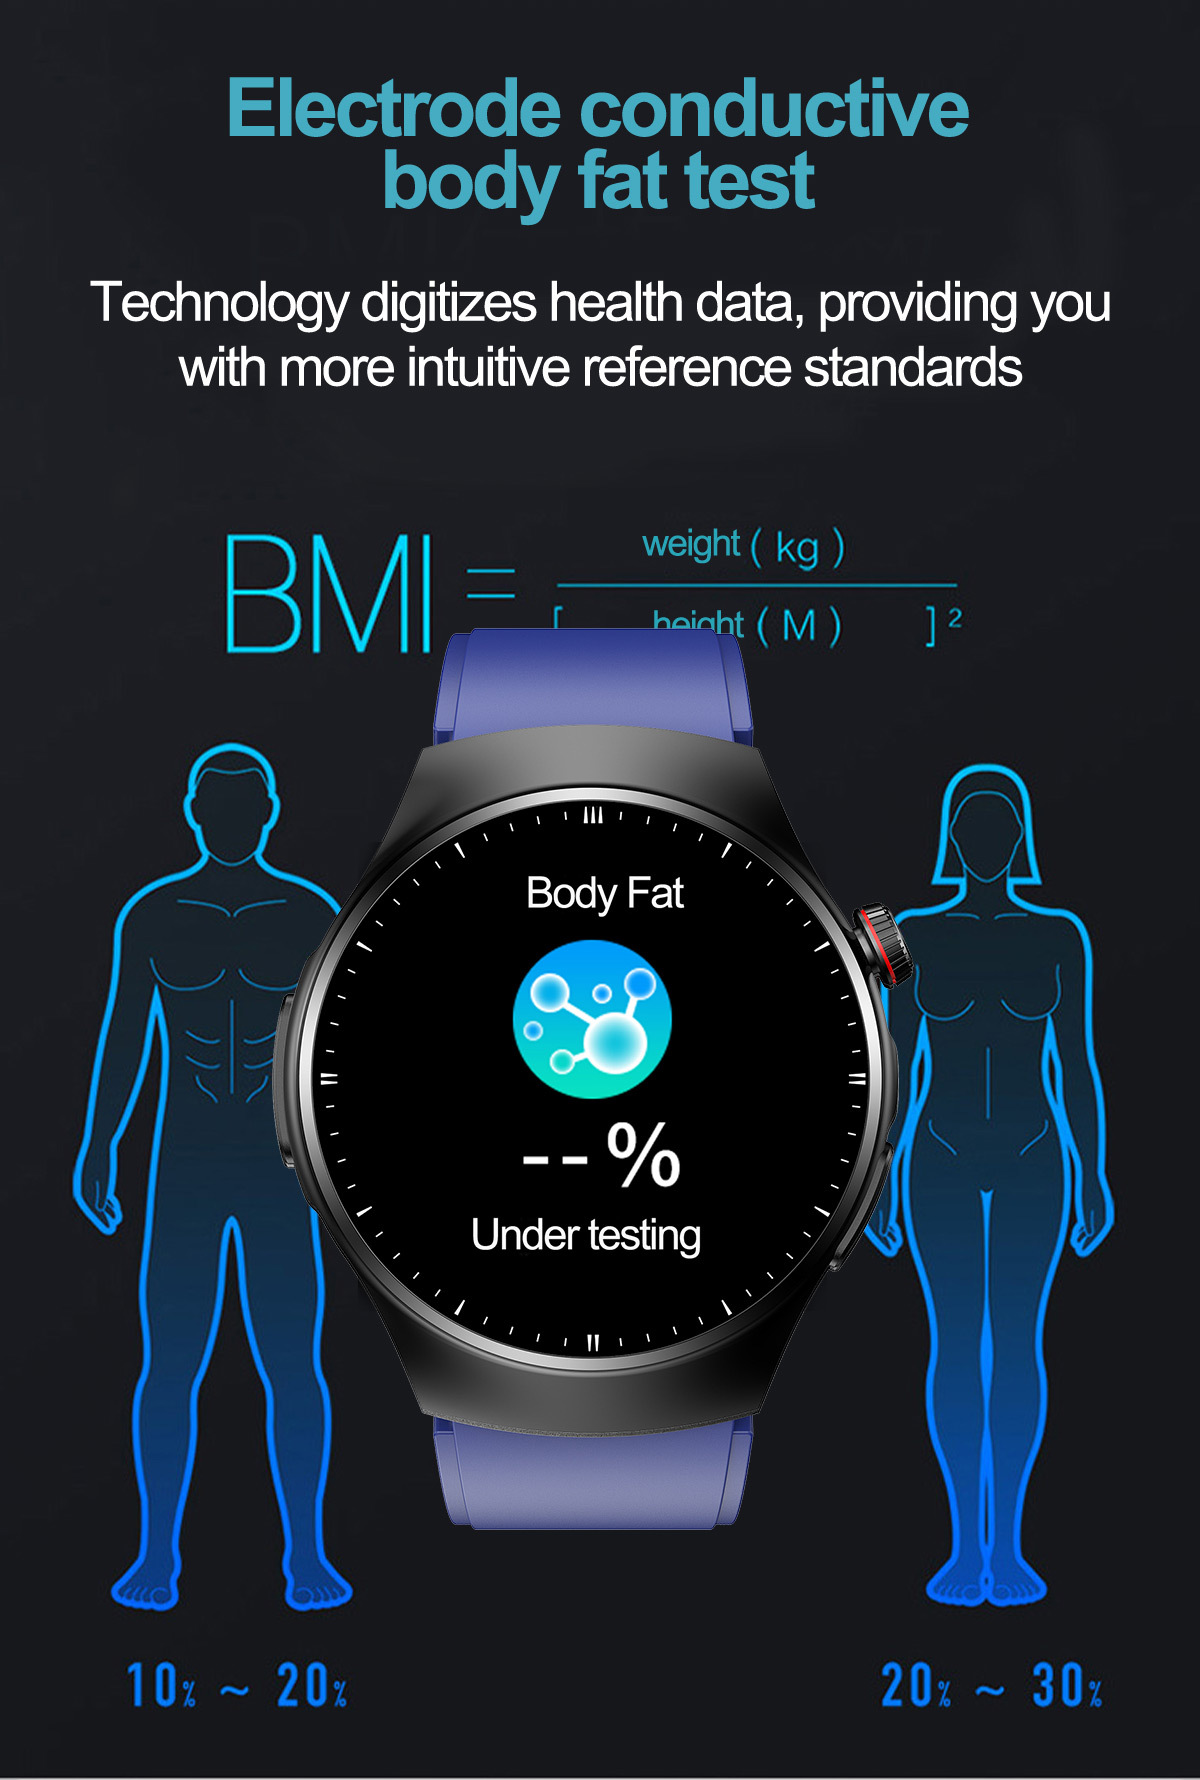 und Braun Gesundheit - Umfassendes BRIGHTAKE für Smartwatch Gesundheitsmonitoring mehr Ihre Leder, Smartwatch